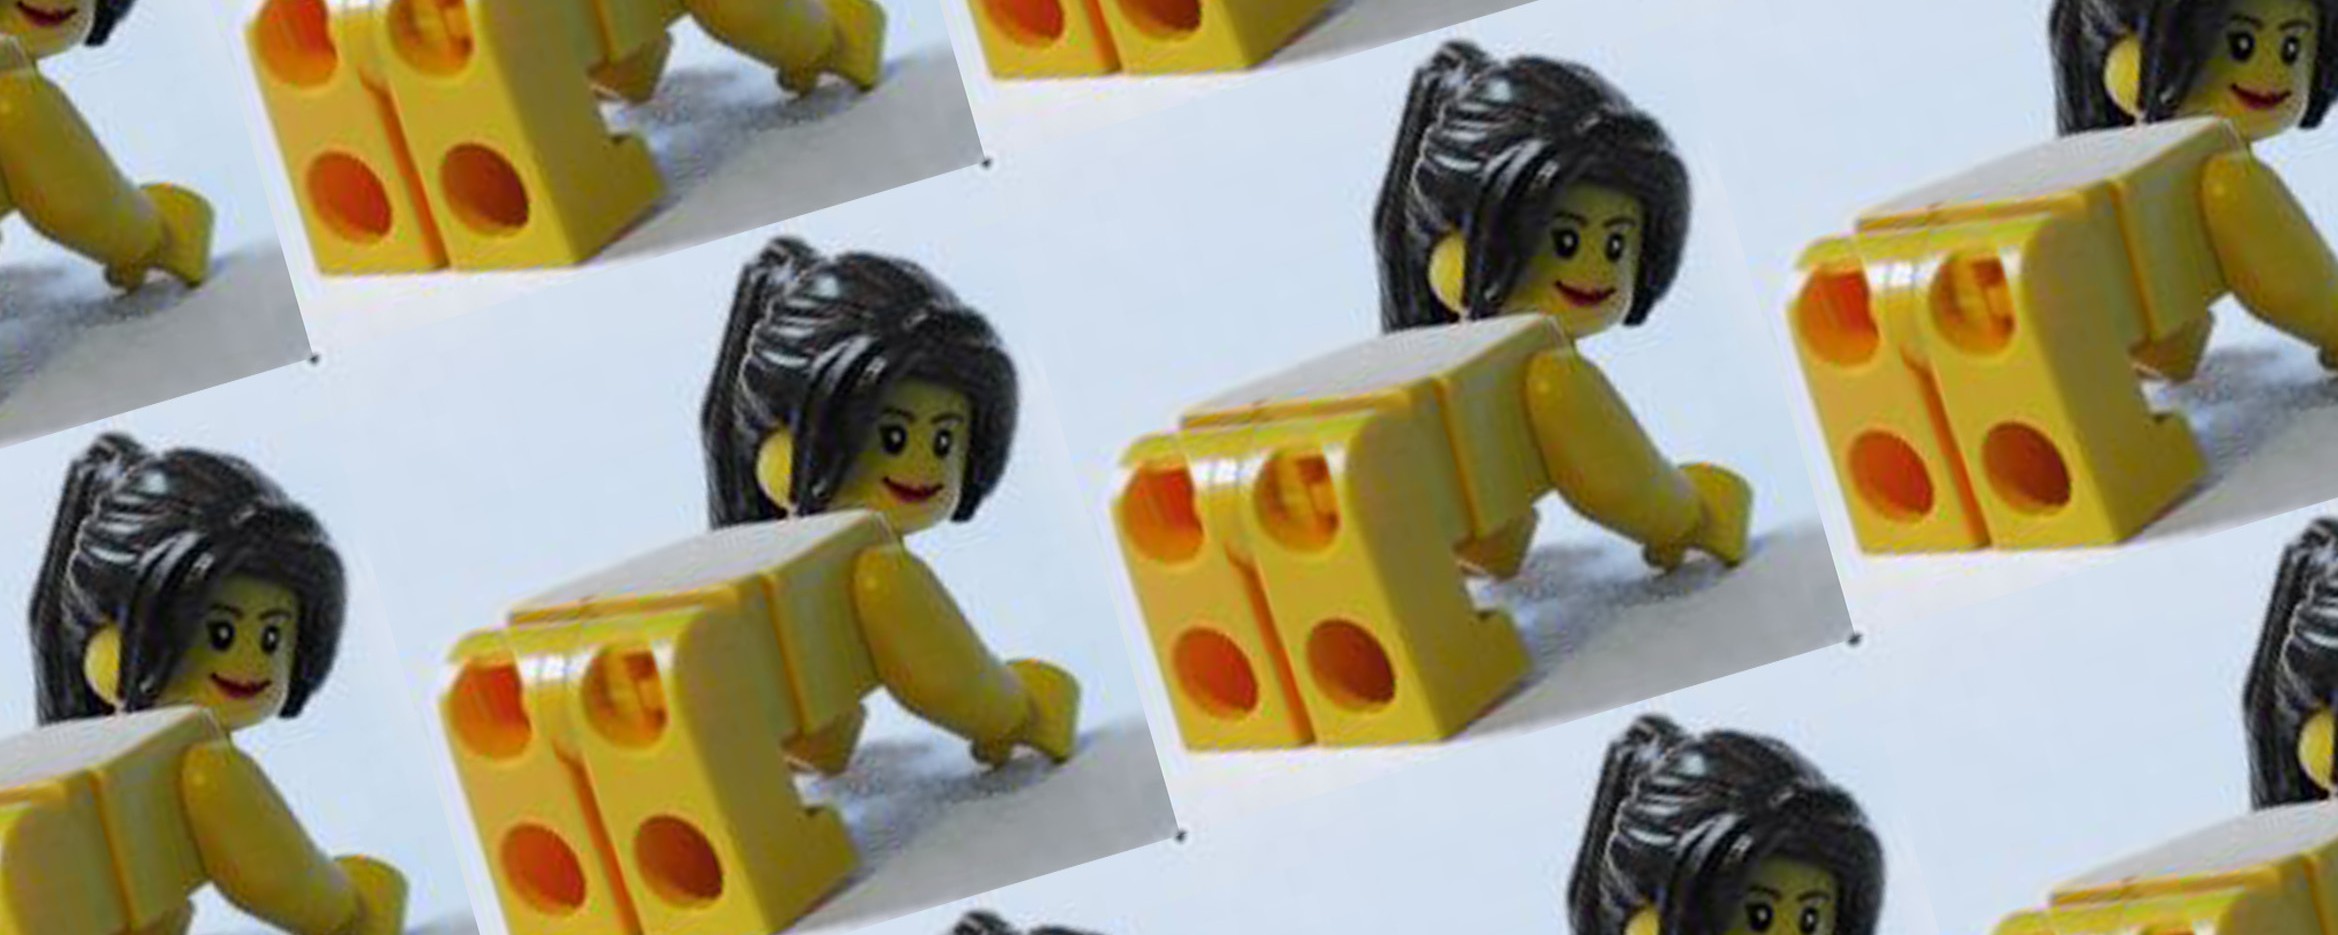 Ninjago porno lego The Lego